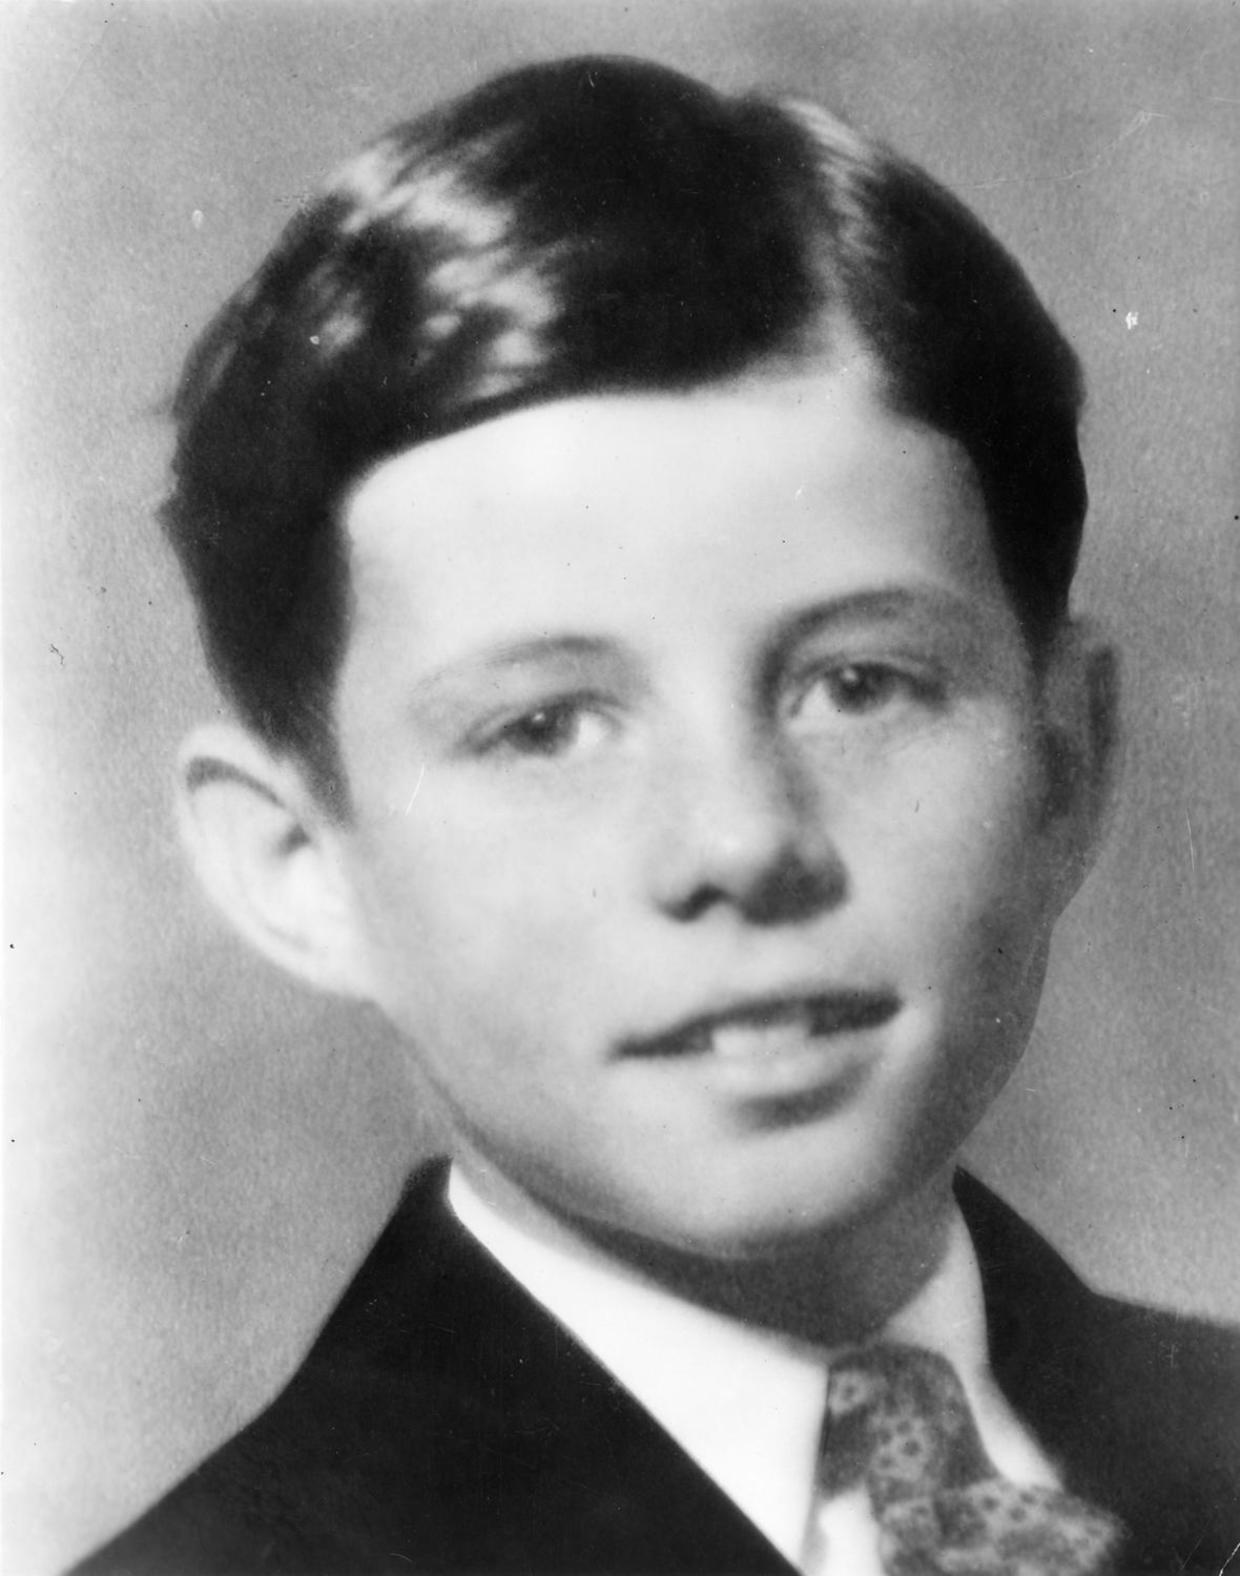 Джон Кеннеди в молодости